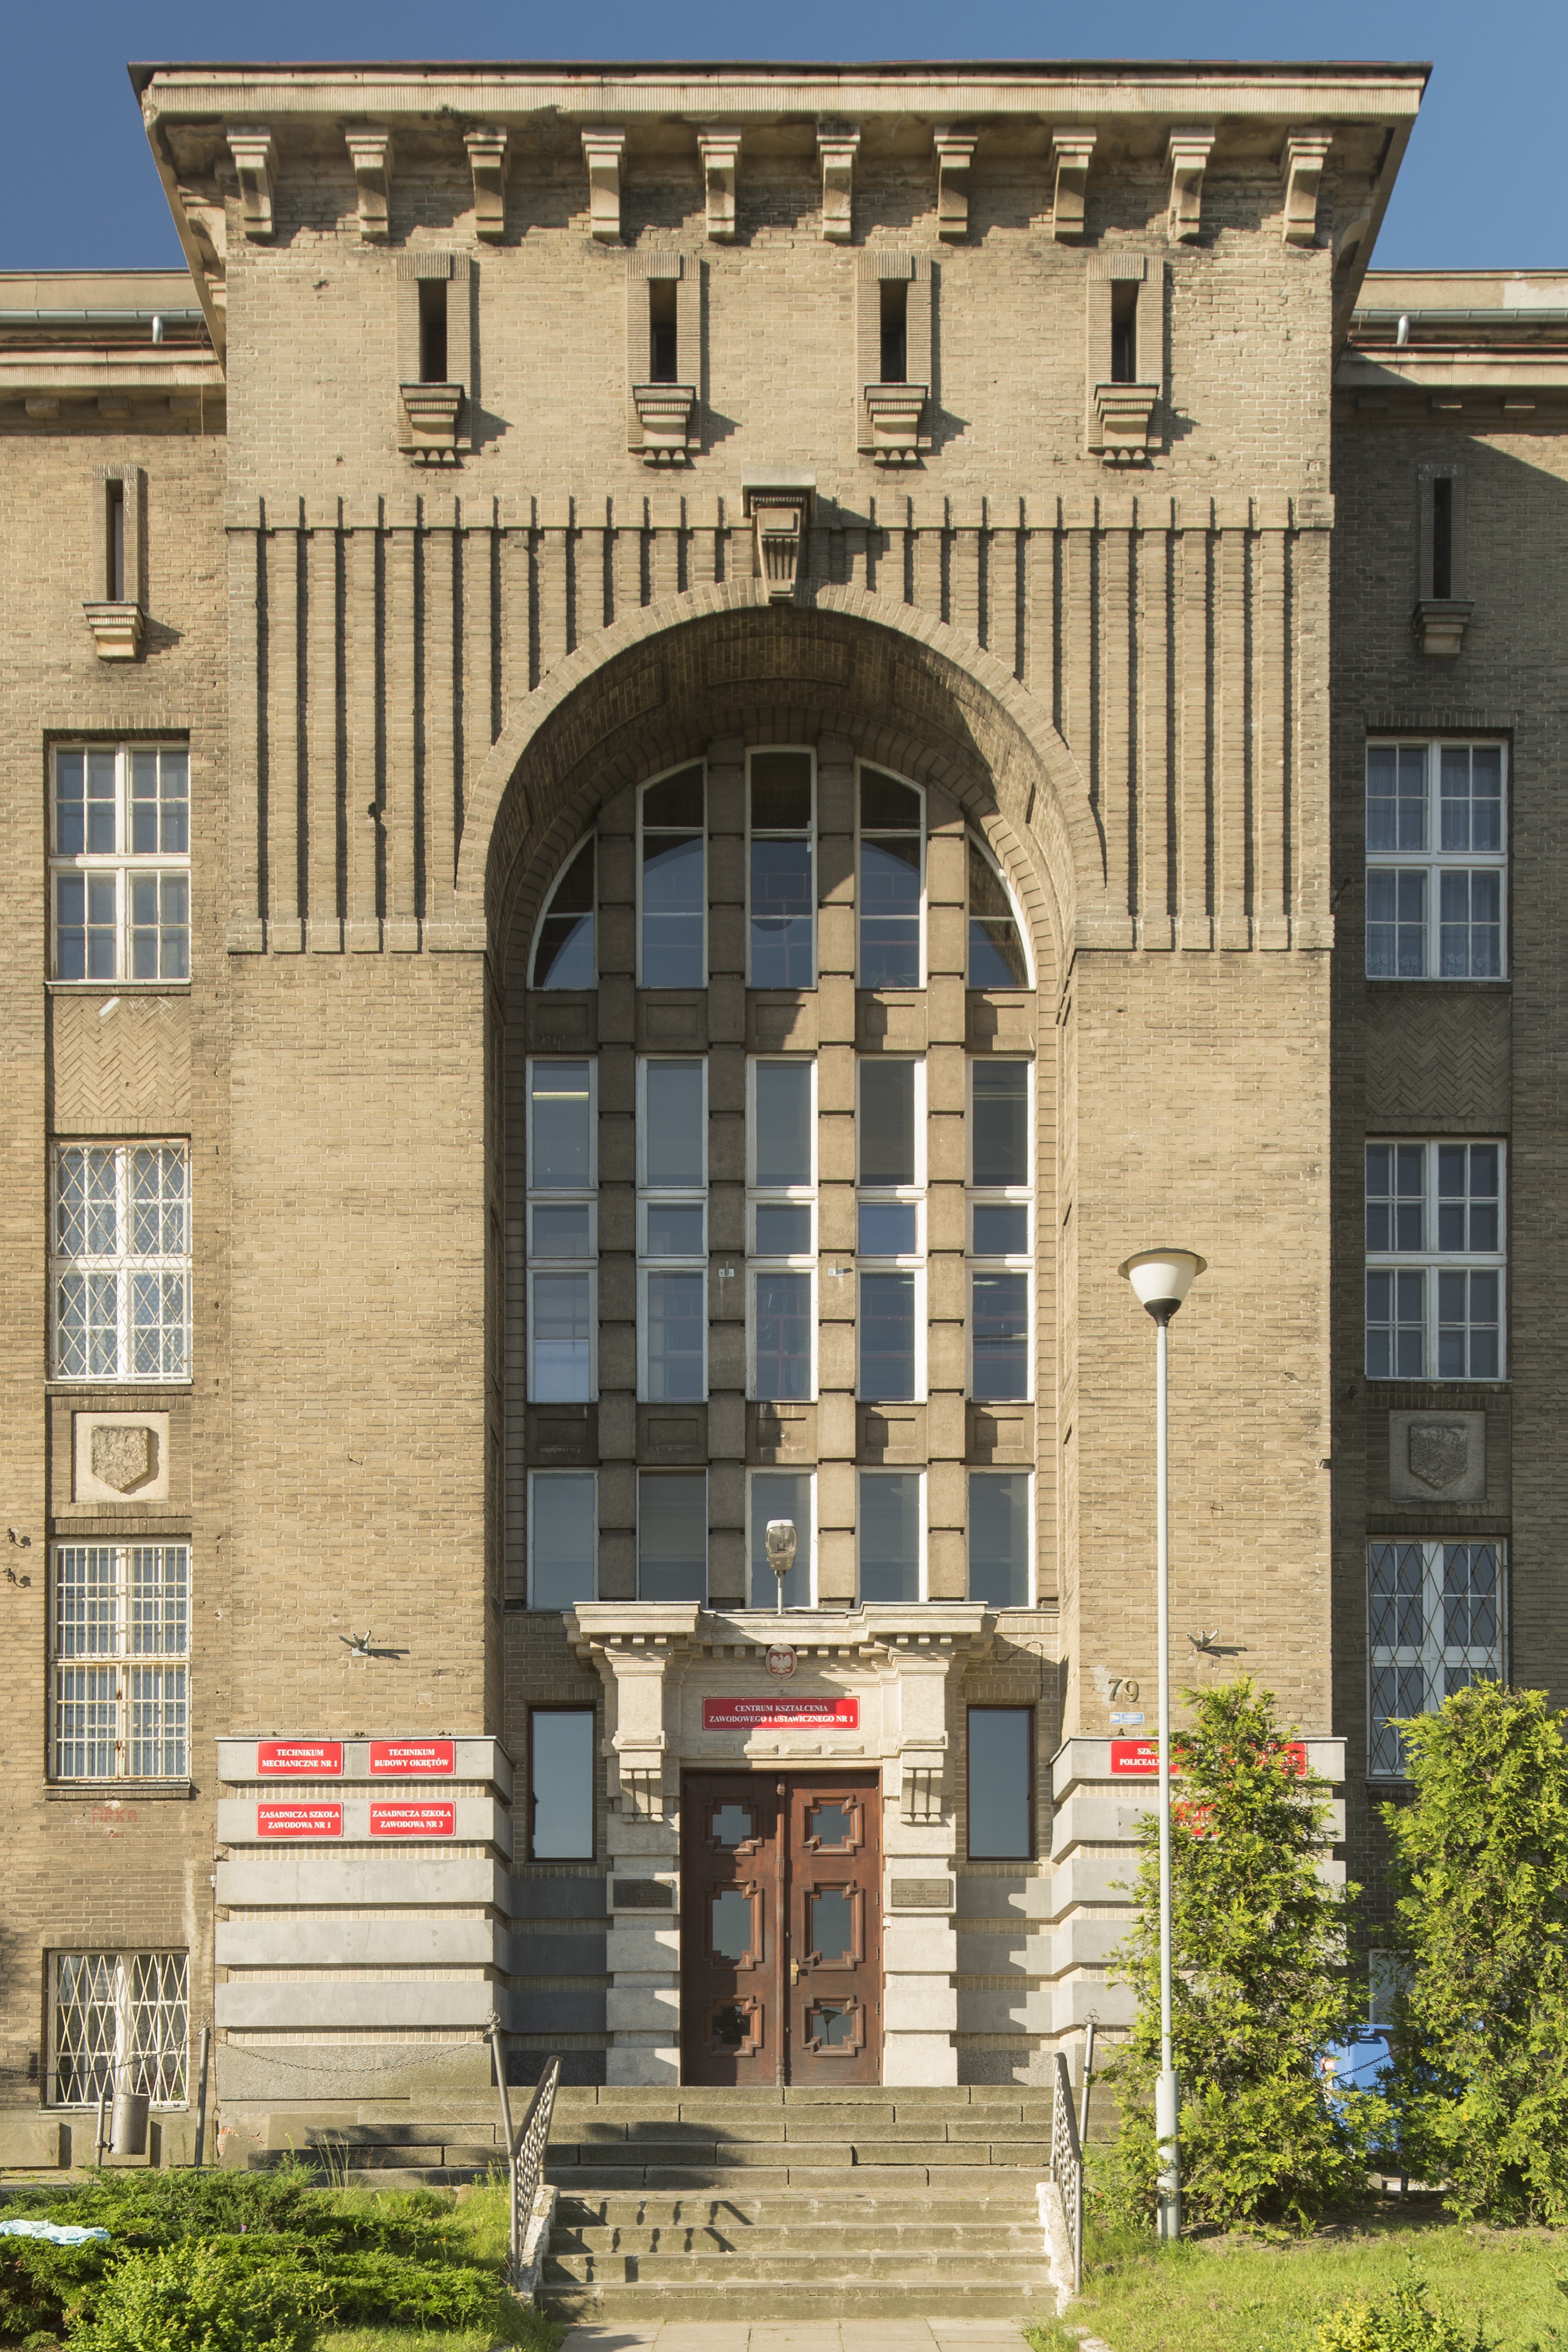 Część wejściowa do głównego budynku przedwojennego Zespołu Szkół Zawodowych przy ul. Morskiej 79 - unikatowy w skali kraju przykład dekoracji elewacji z szarych cegieł cementowych